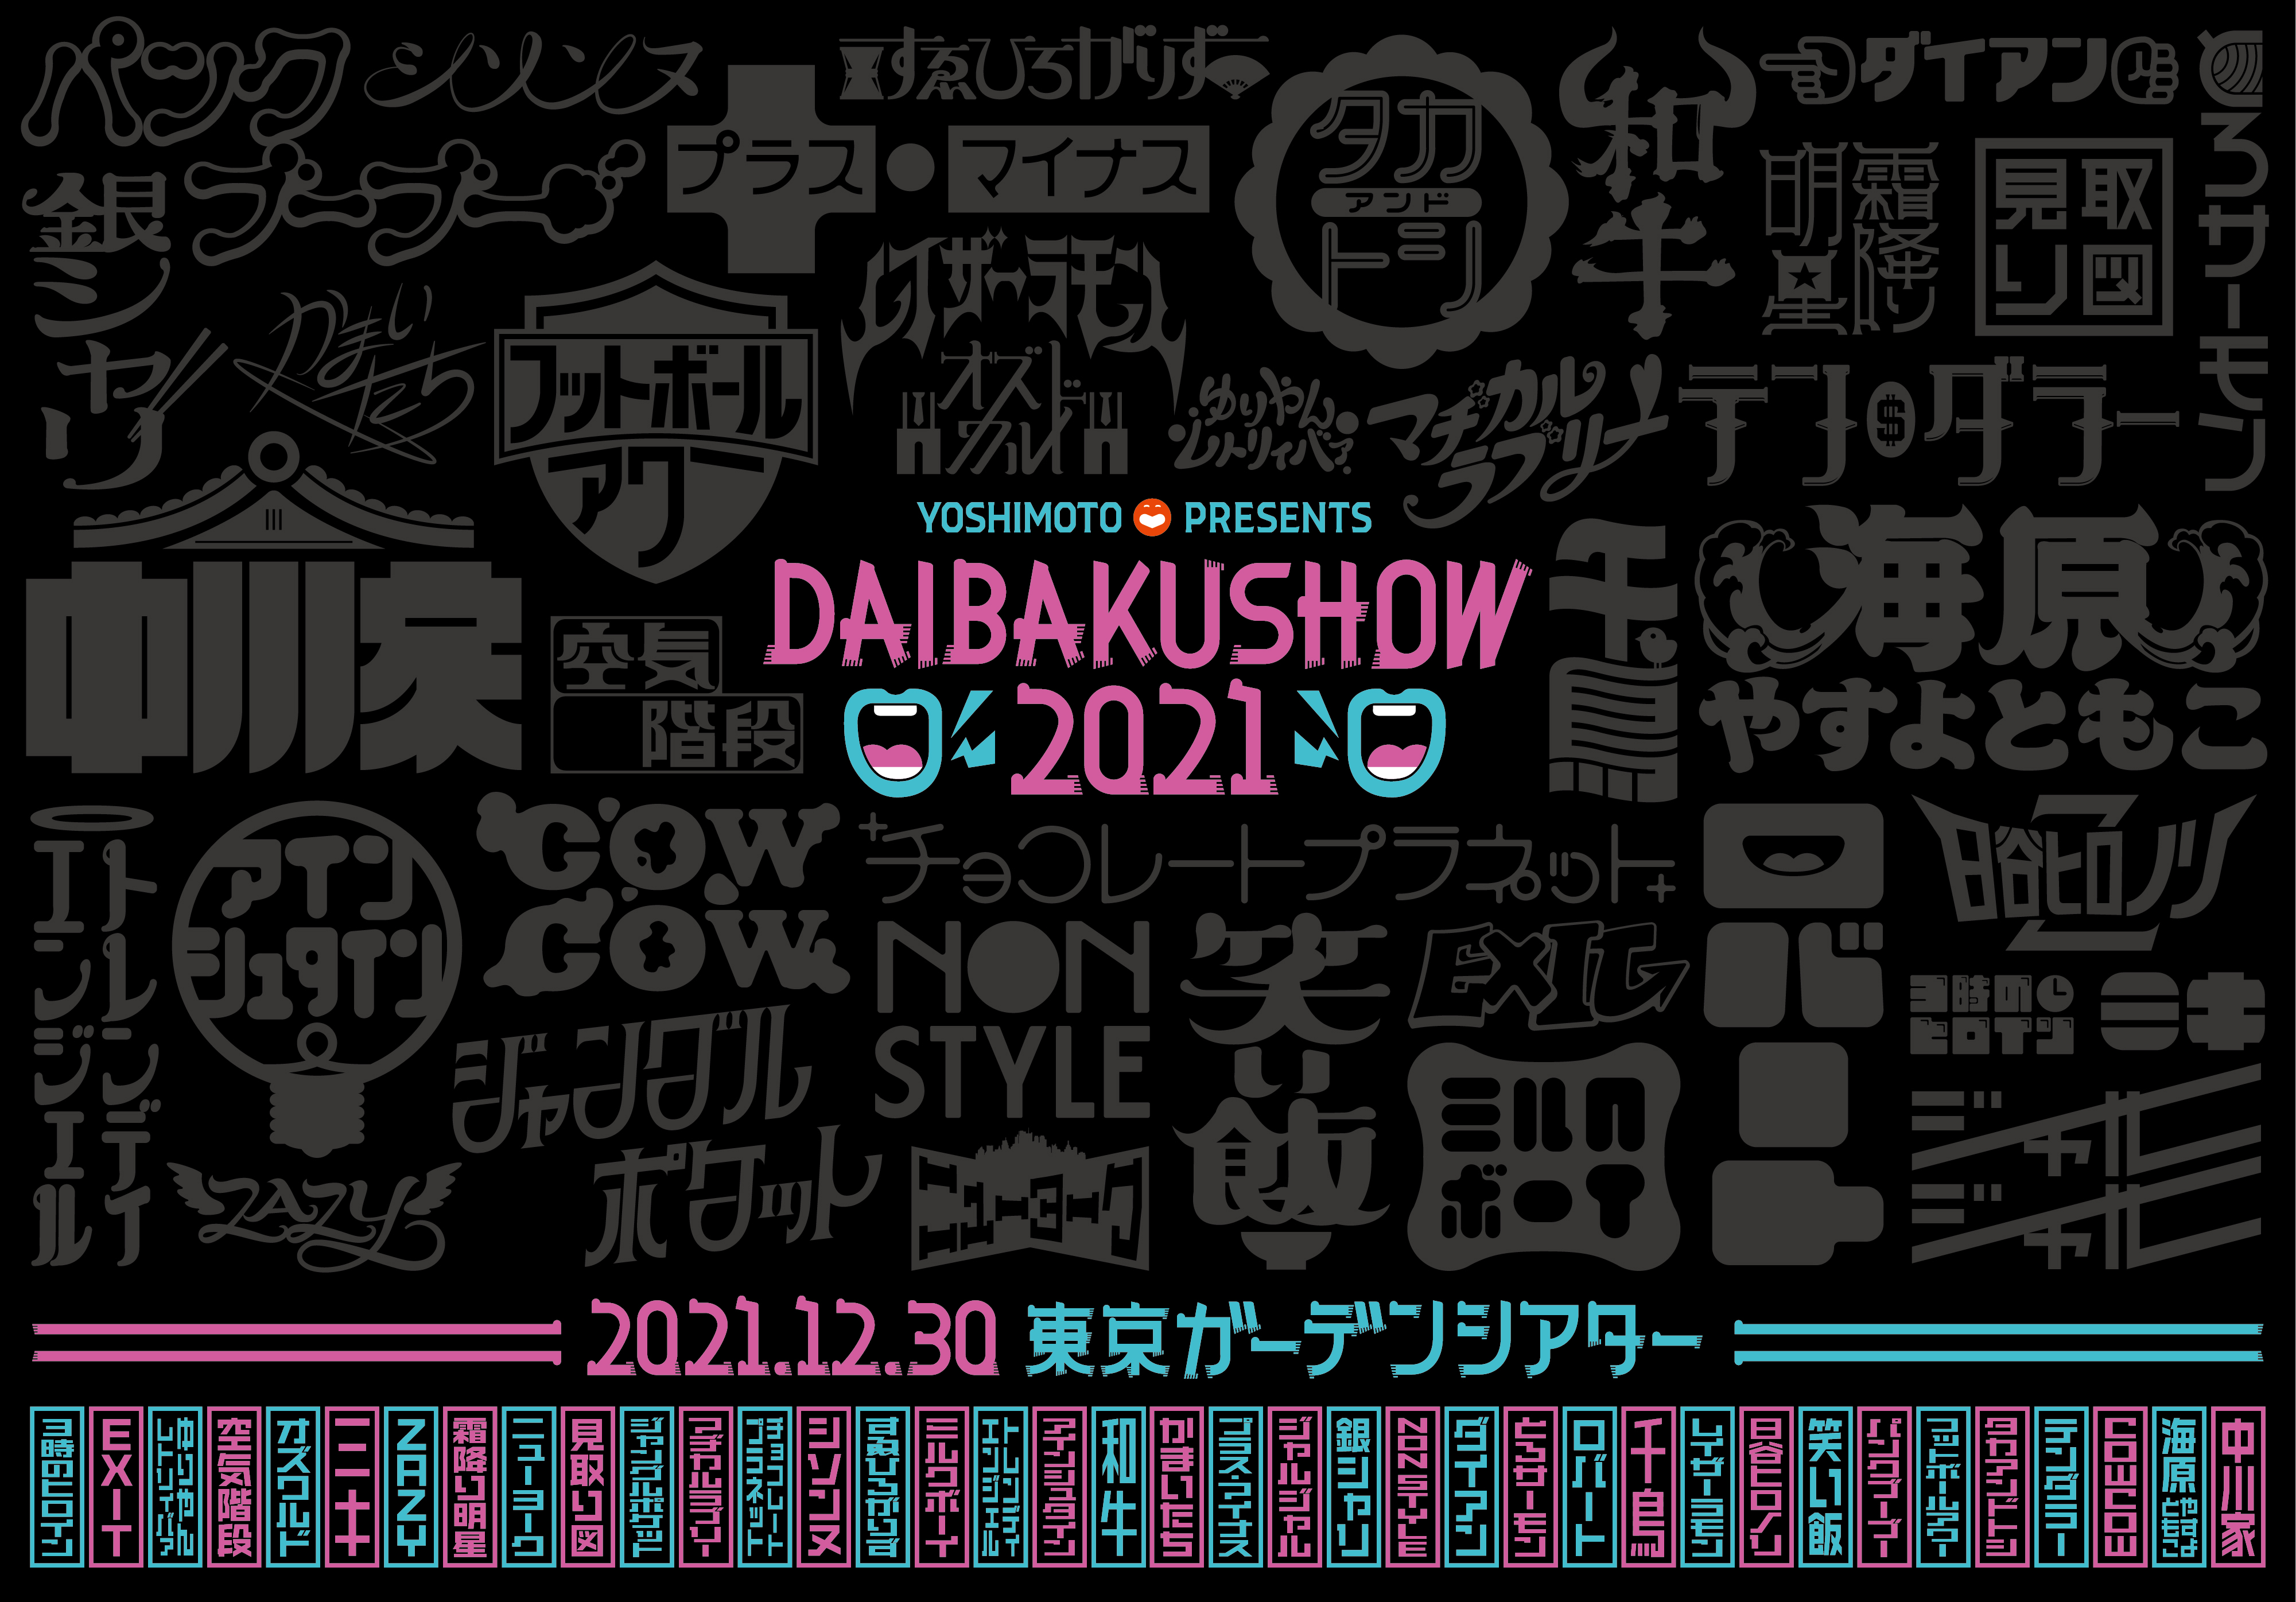 今年最大級のお笑いイベント! YOSHIMOTO presents DAIBAKUSHOW 2021